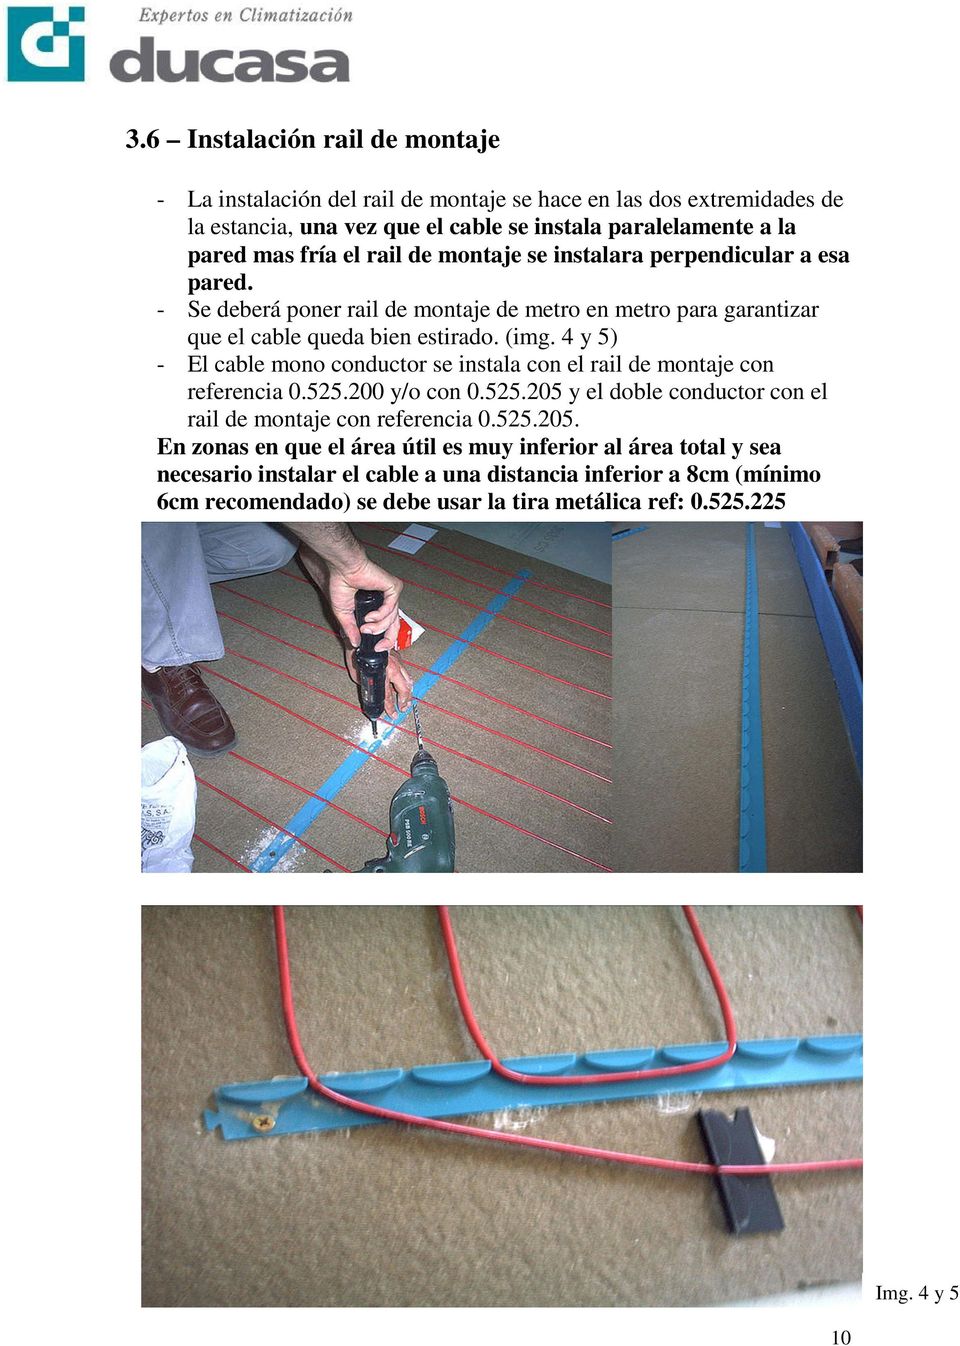 4 y 5) - El cable mono conductor se instala con el rail de montaje con referencia 0.525.200 y/o con 0.525.205 